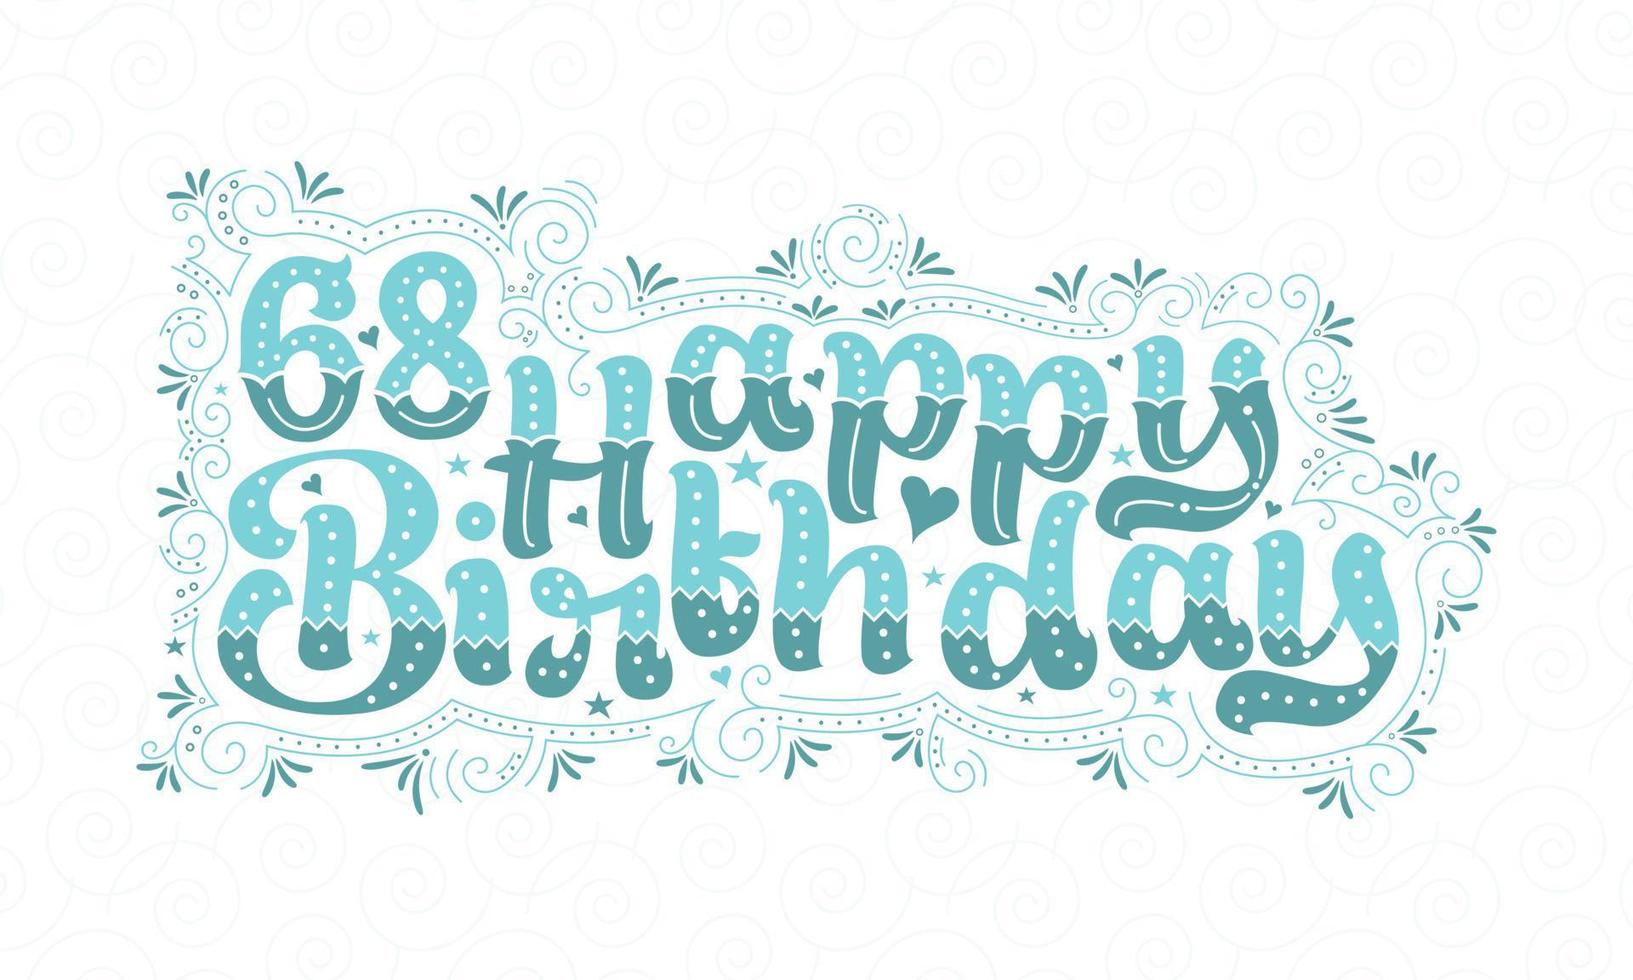 68th letras de feliz aniversário, 68 anos de aniversário lindo design de tipografia com pontos aqua, linhas e folhas. vetor